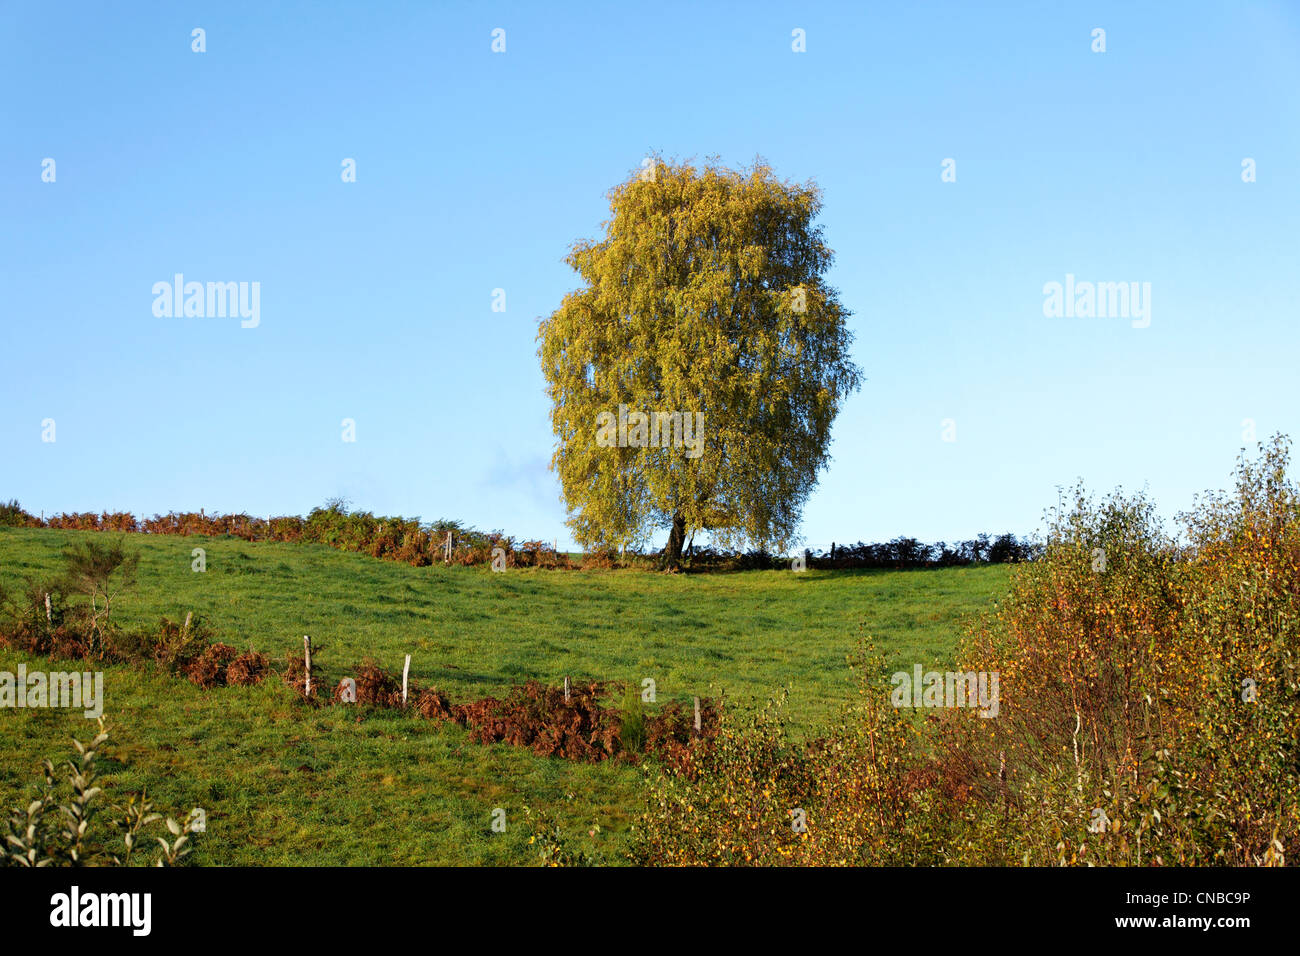 France, Corrèze, isoler arbre (Betula pendula) Banque D'Images